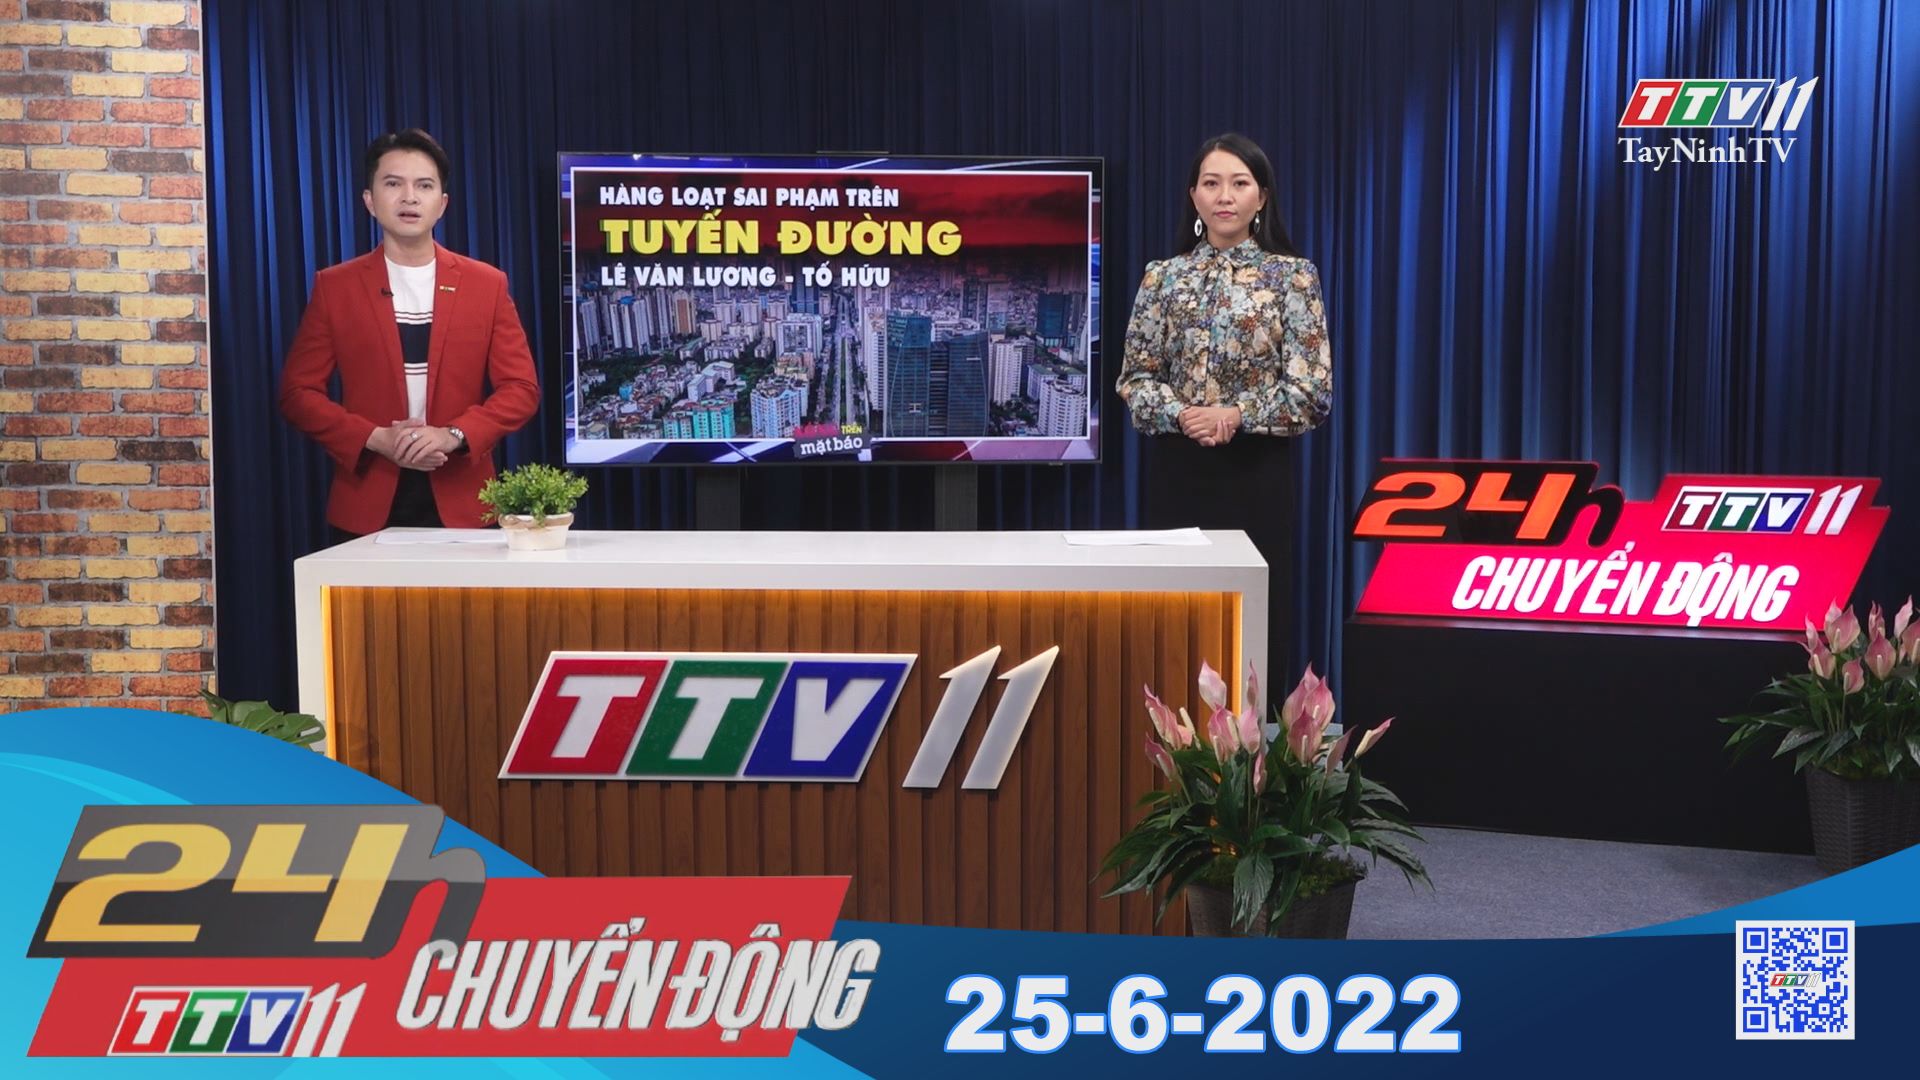 24h Chuyển động 25-6-2022 | Tin tức hôm nay | TayNinhTV